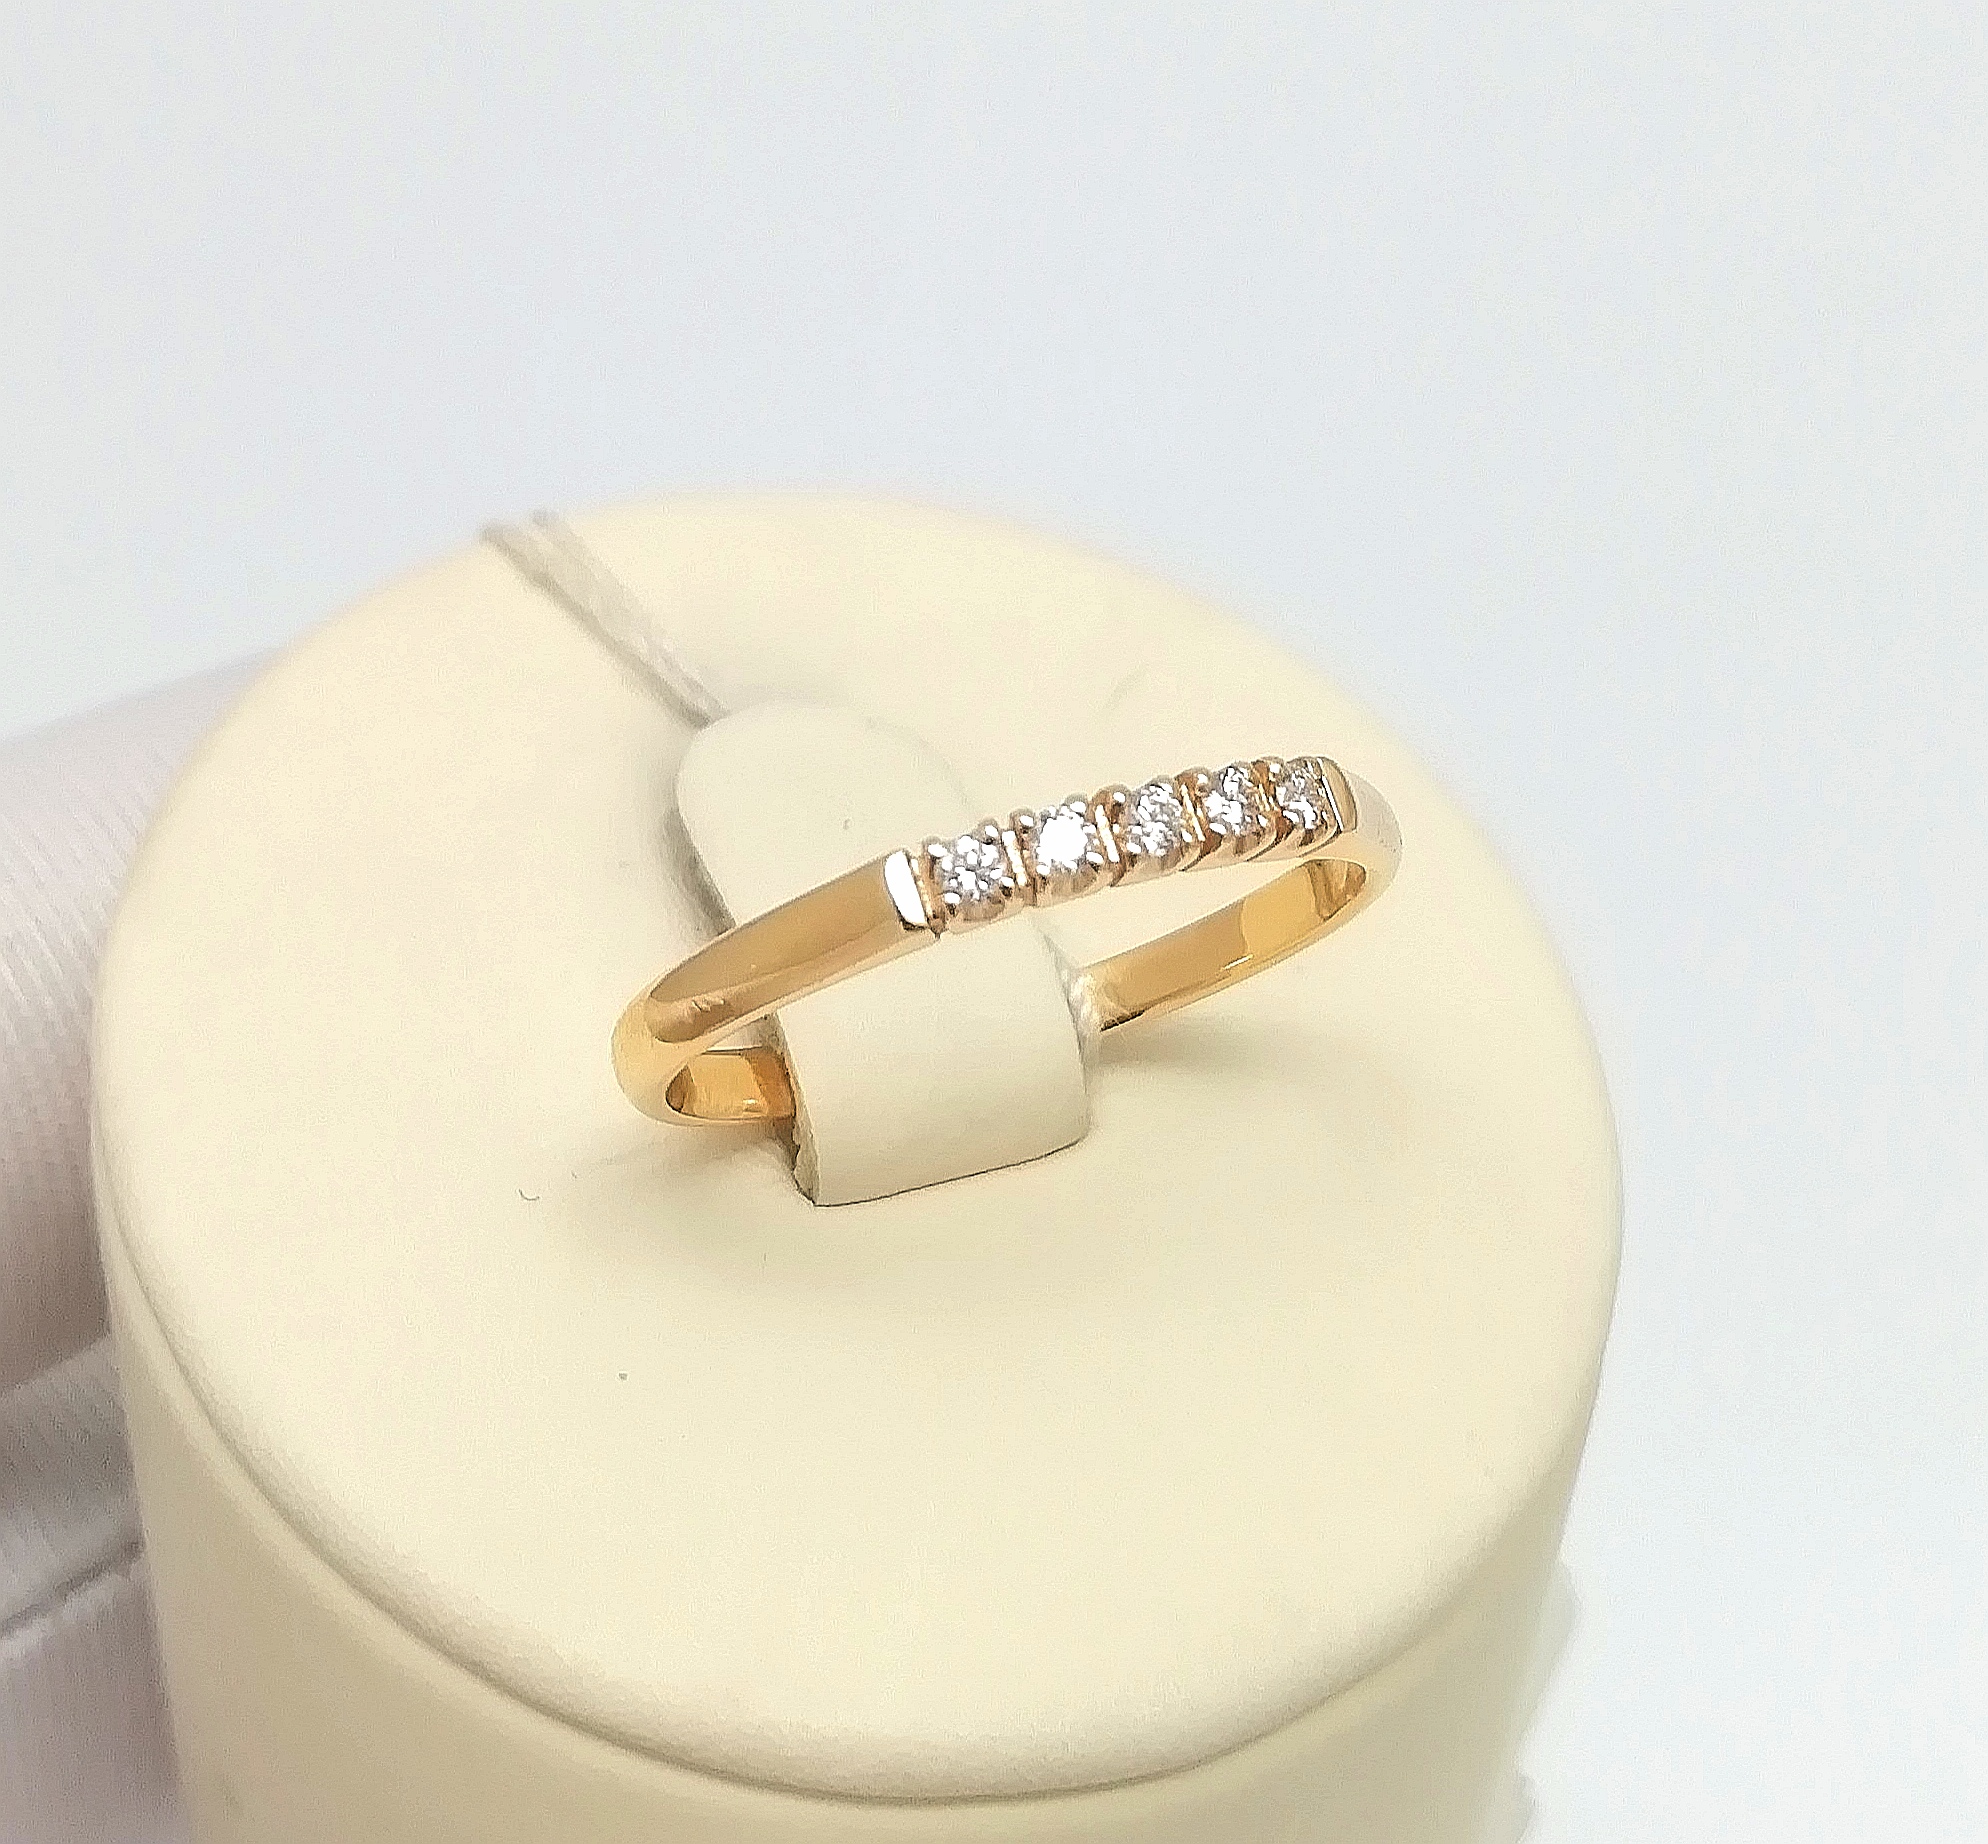 Классическое женское золотое кольцо с бриллиантами вз002136-7 1,51гр